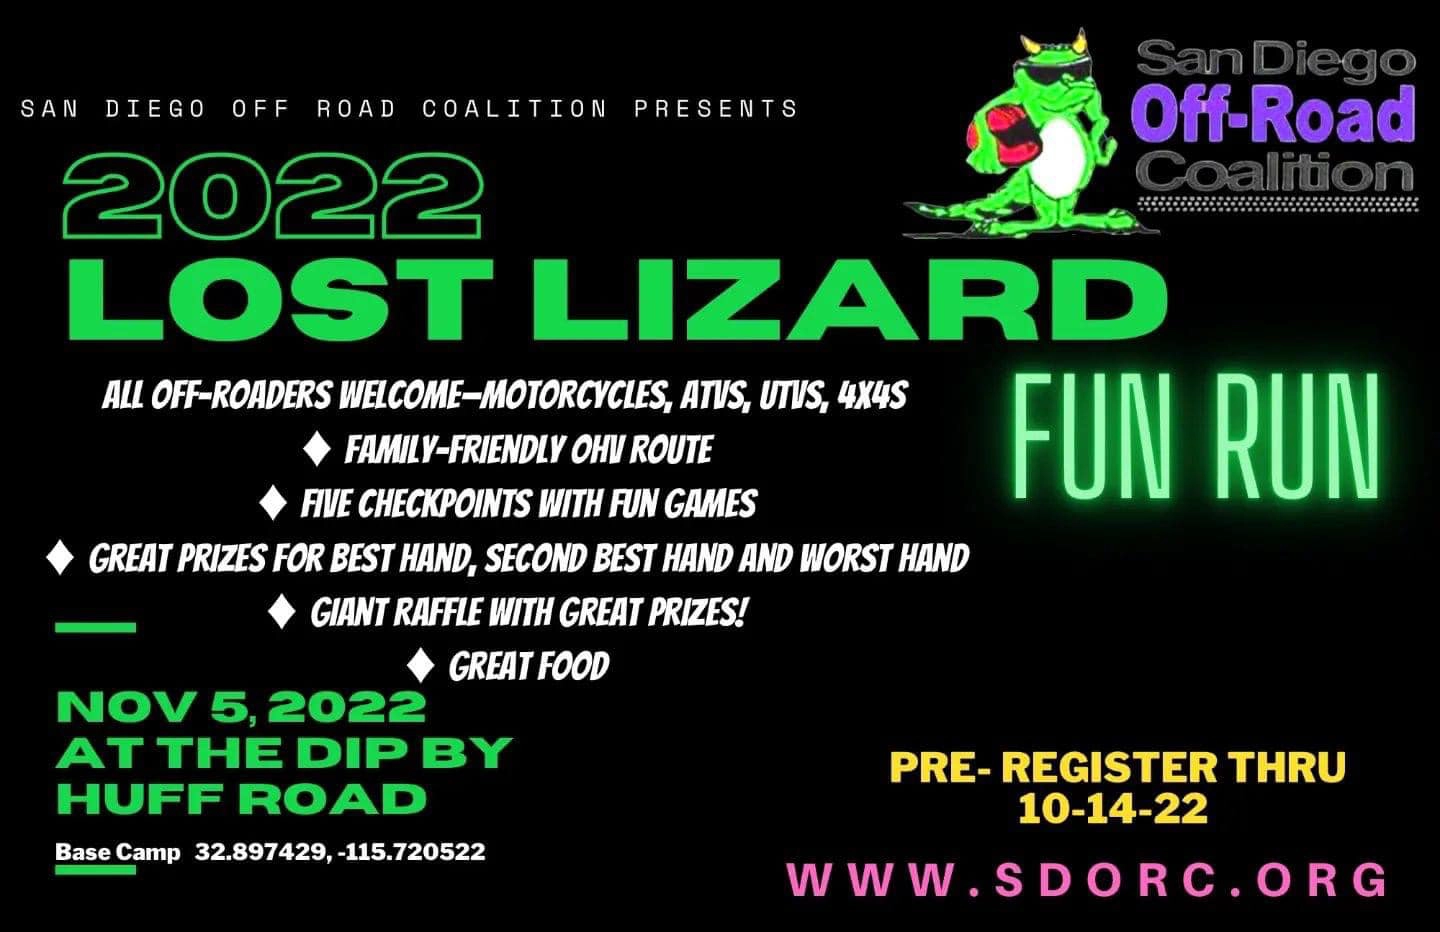 Lost Lizard Fun Run 2022